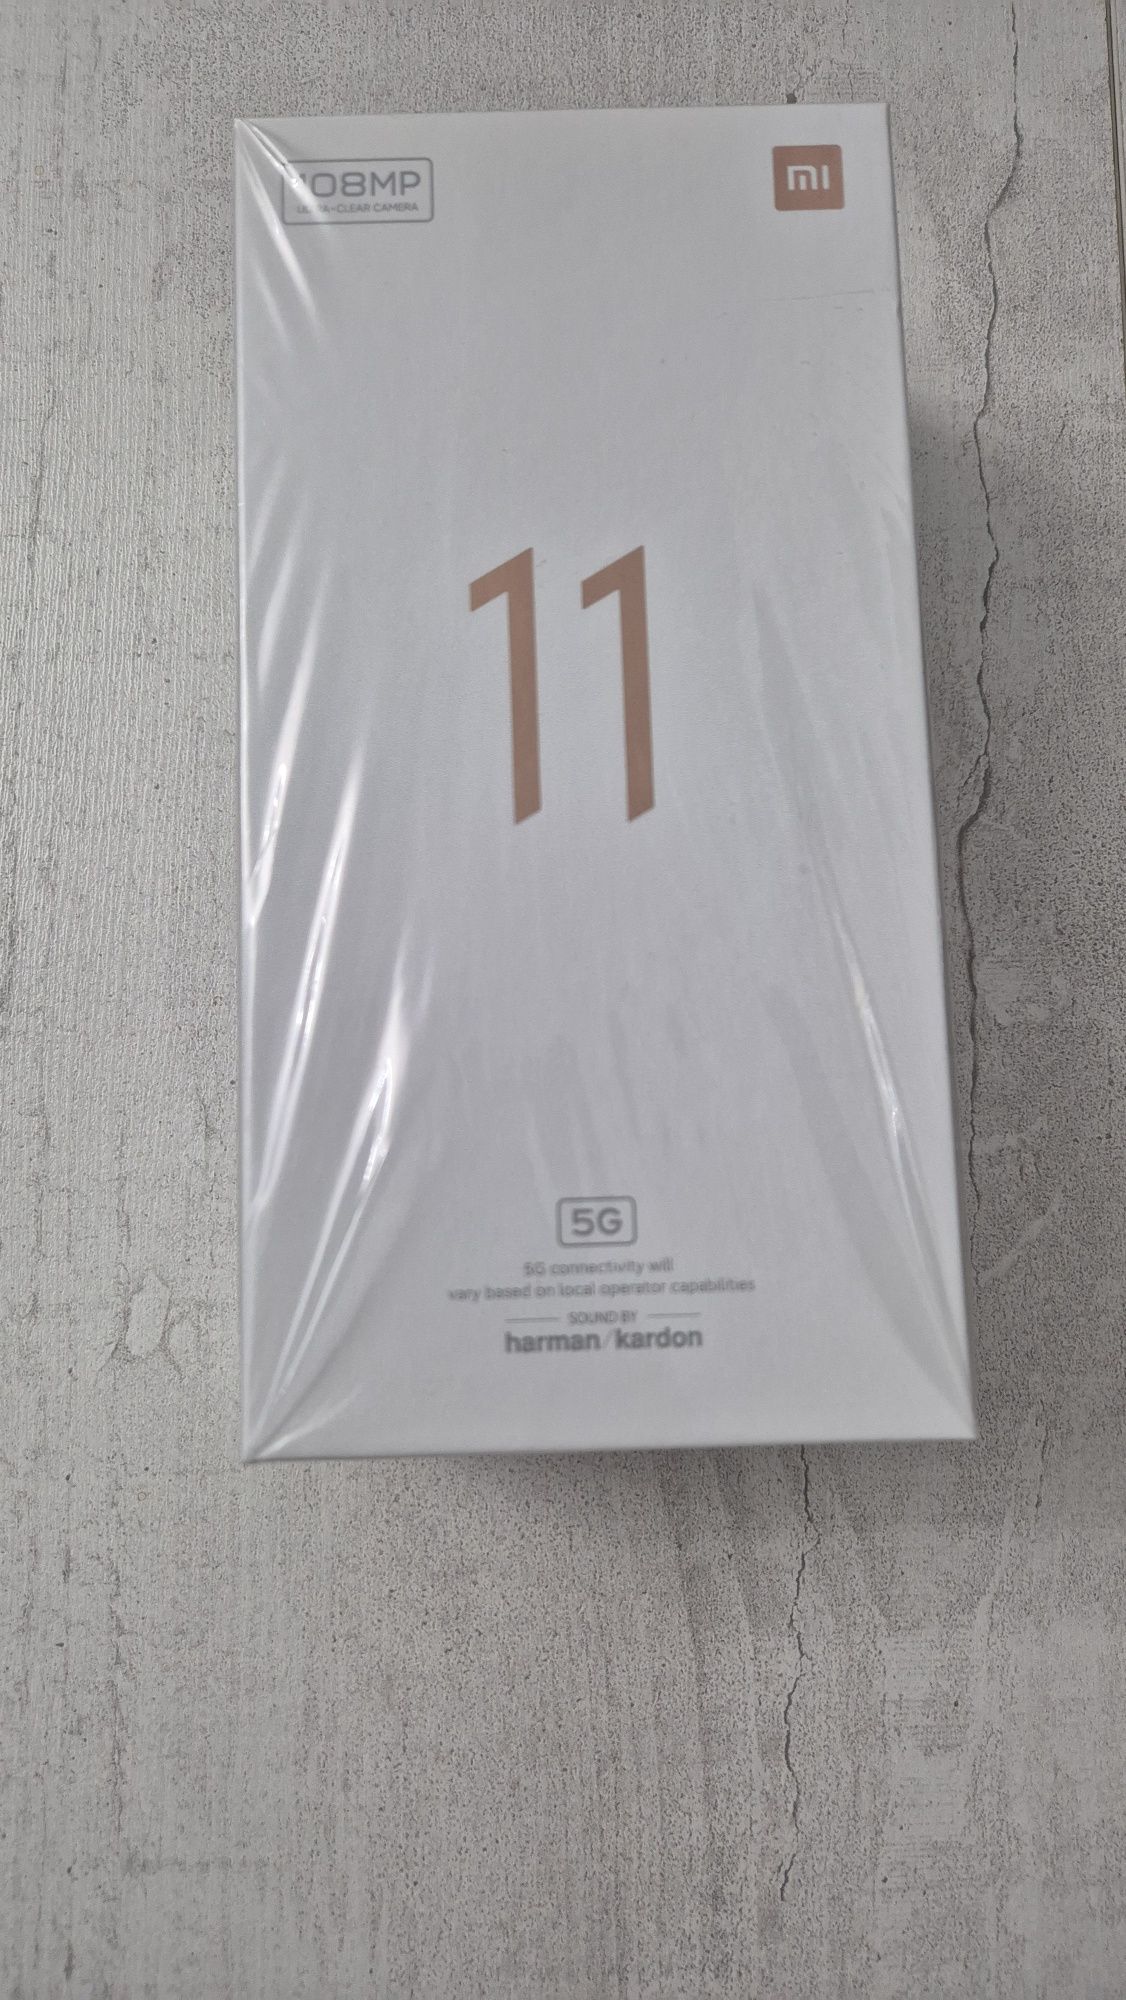 Xiaomi mi 11, 5g